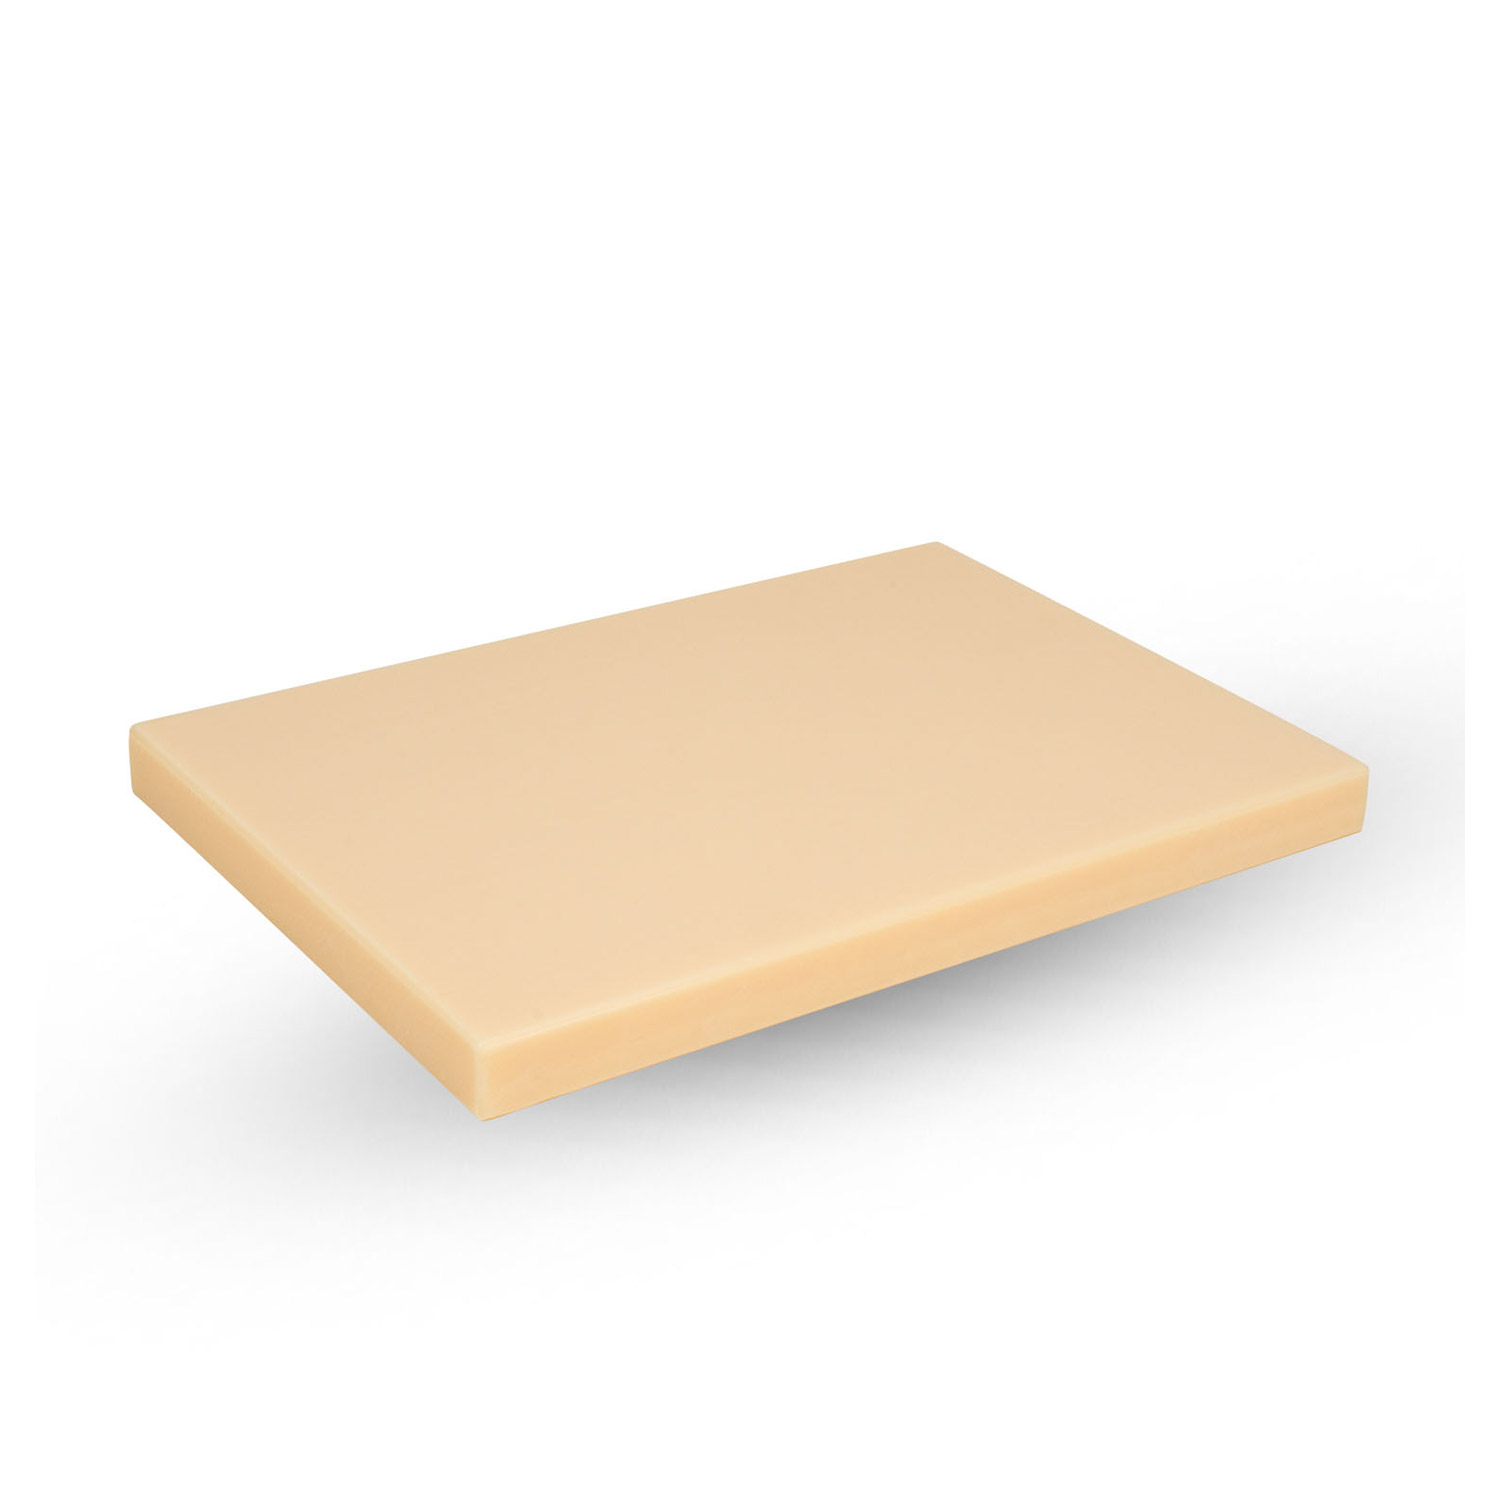 Tenryo K-Type Non Slip Cutting Board Home Use